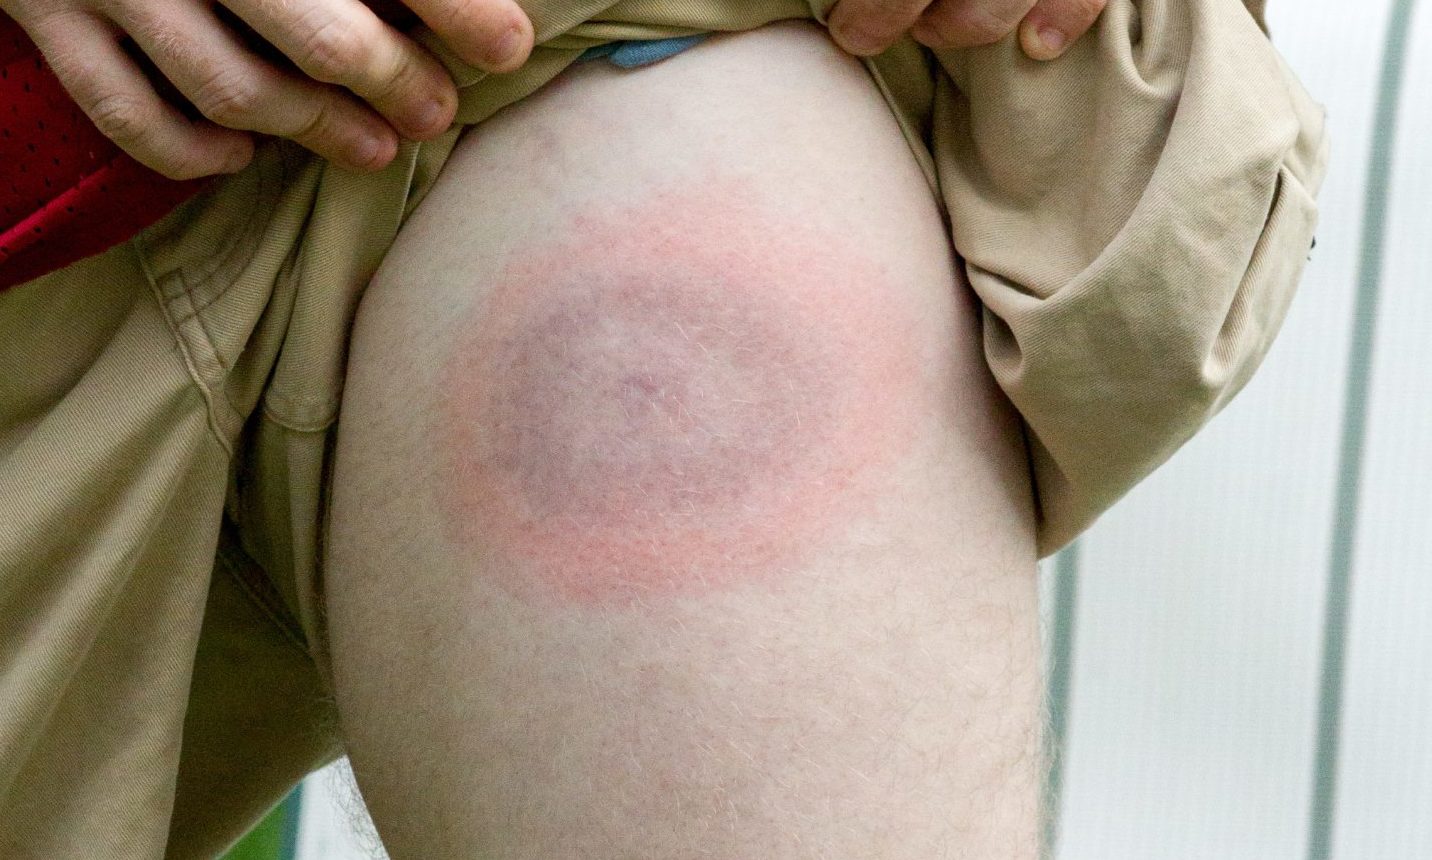 Tick bites can create a rash which looks like a "bullseye"